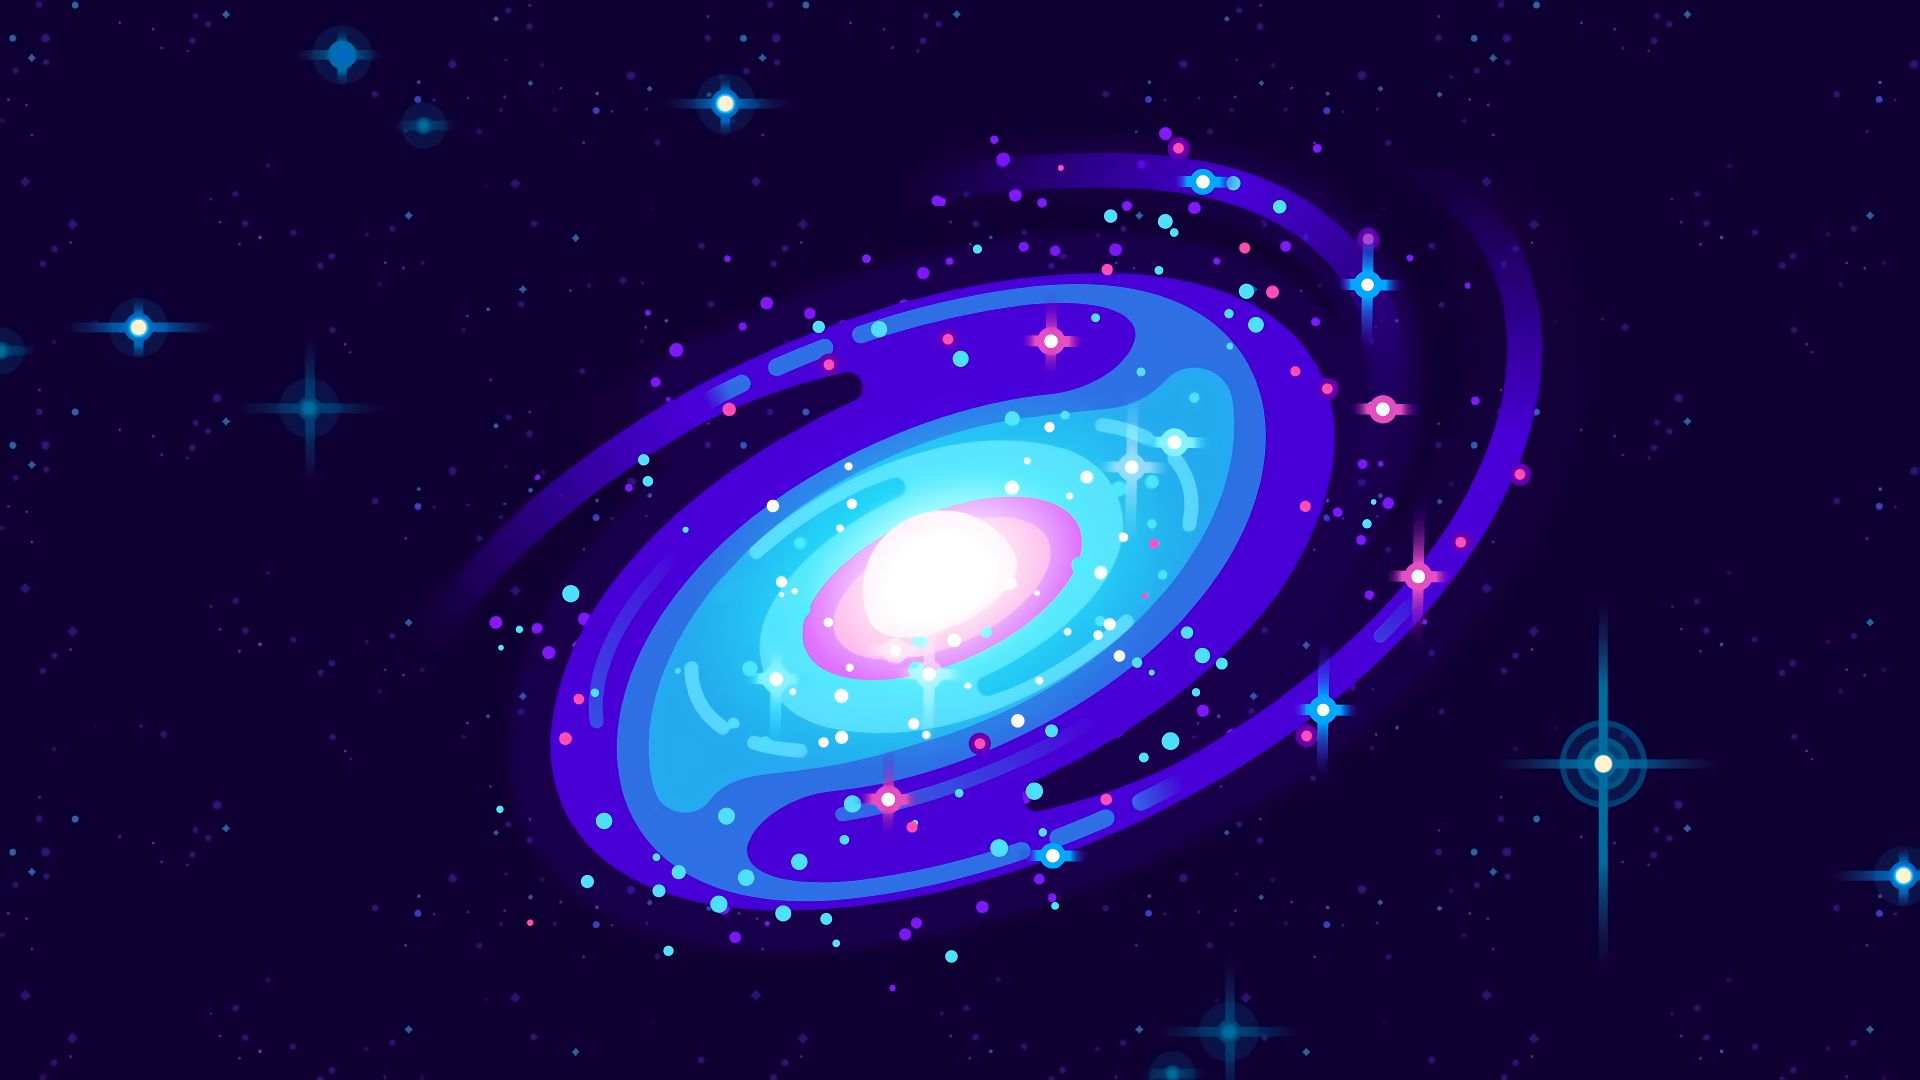 HD desktop wallpaper: Stars, Galaxy, Space, Sci Fi, Minimalist, Kurzgesagt  download free picture #1034215